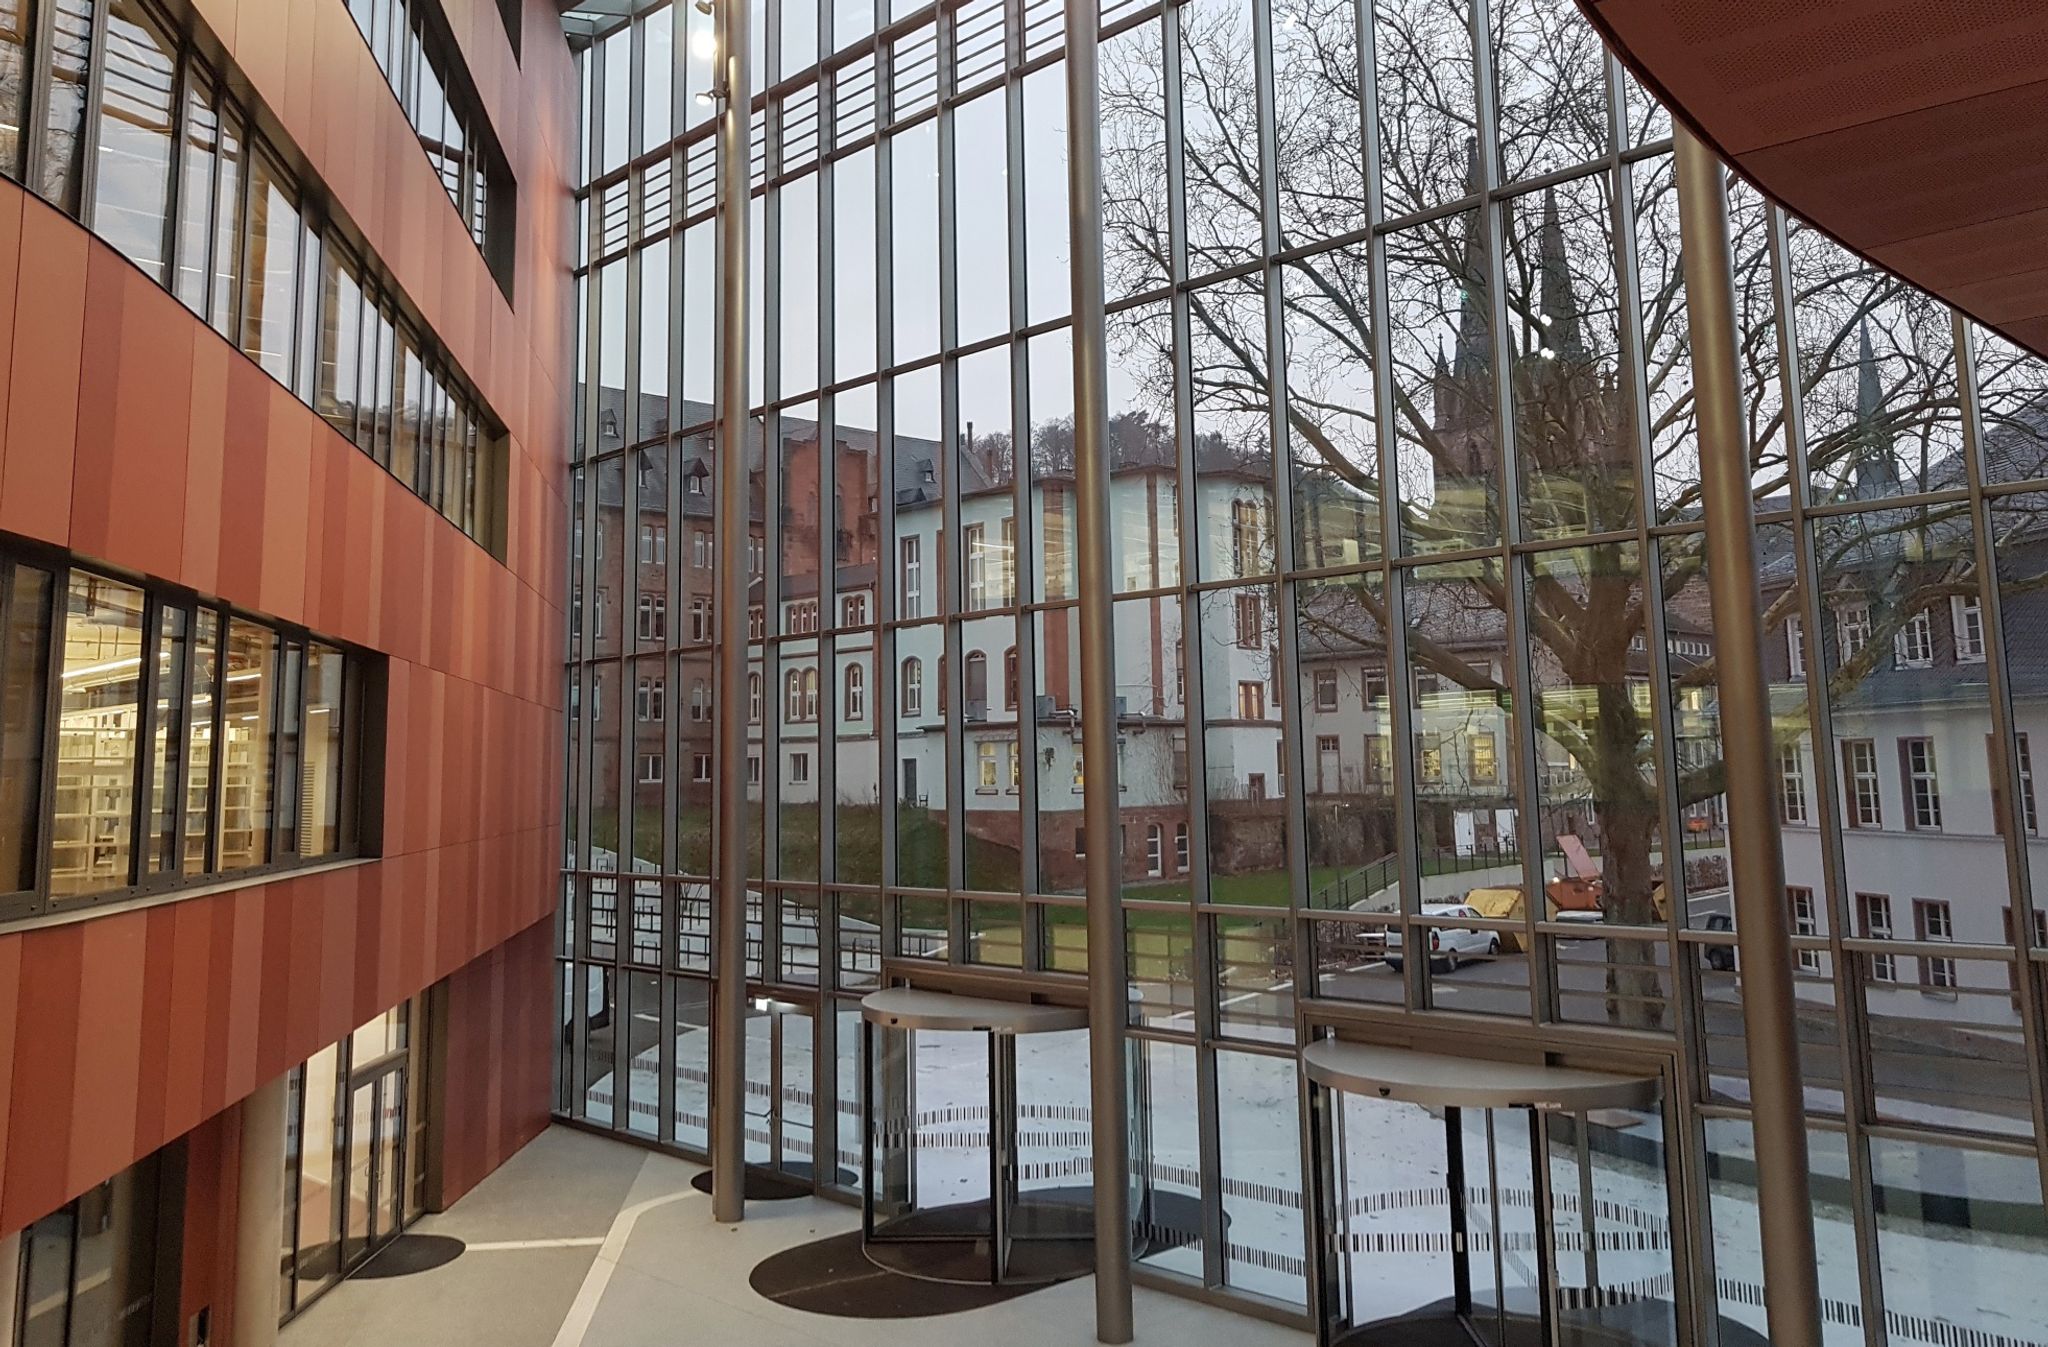 Blick in das Atrium der Universitätsbibliothek Marburg.